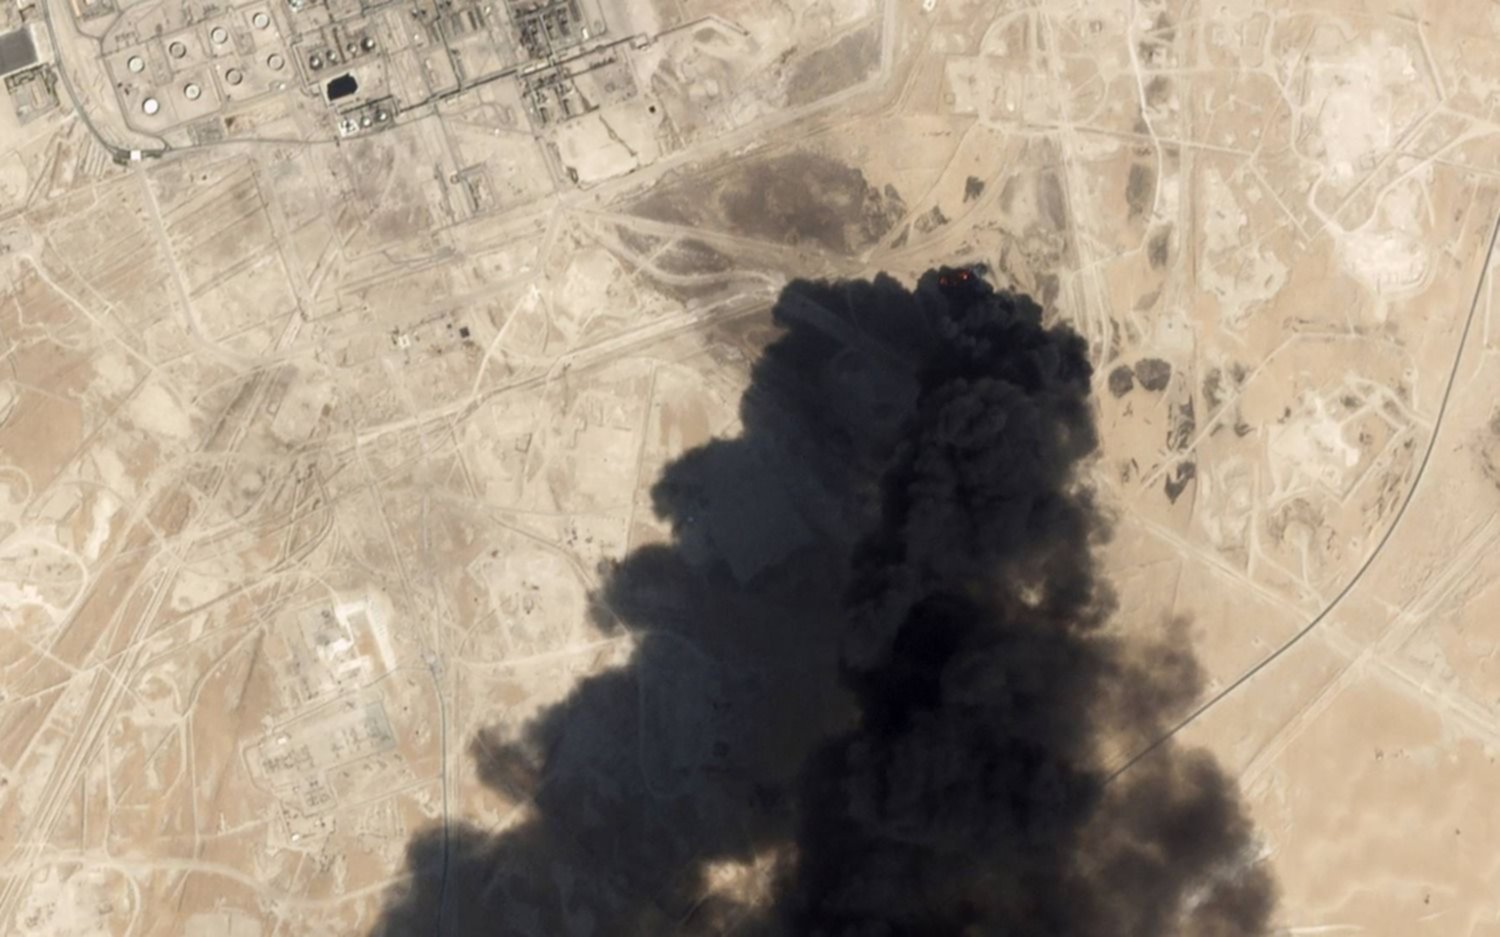 Ataques a oleoductos sauditas con drones disparan el precio del petróleo, que tocó los U$S 71 el barril